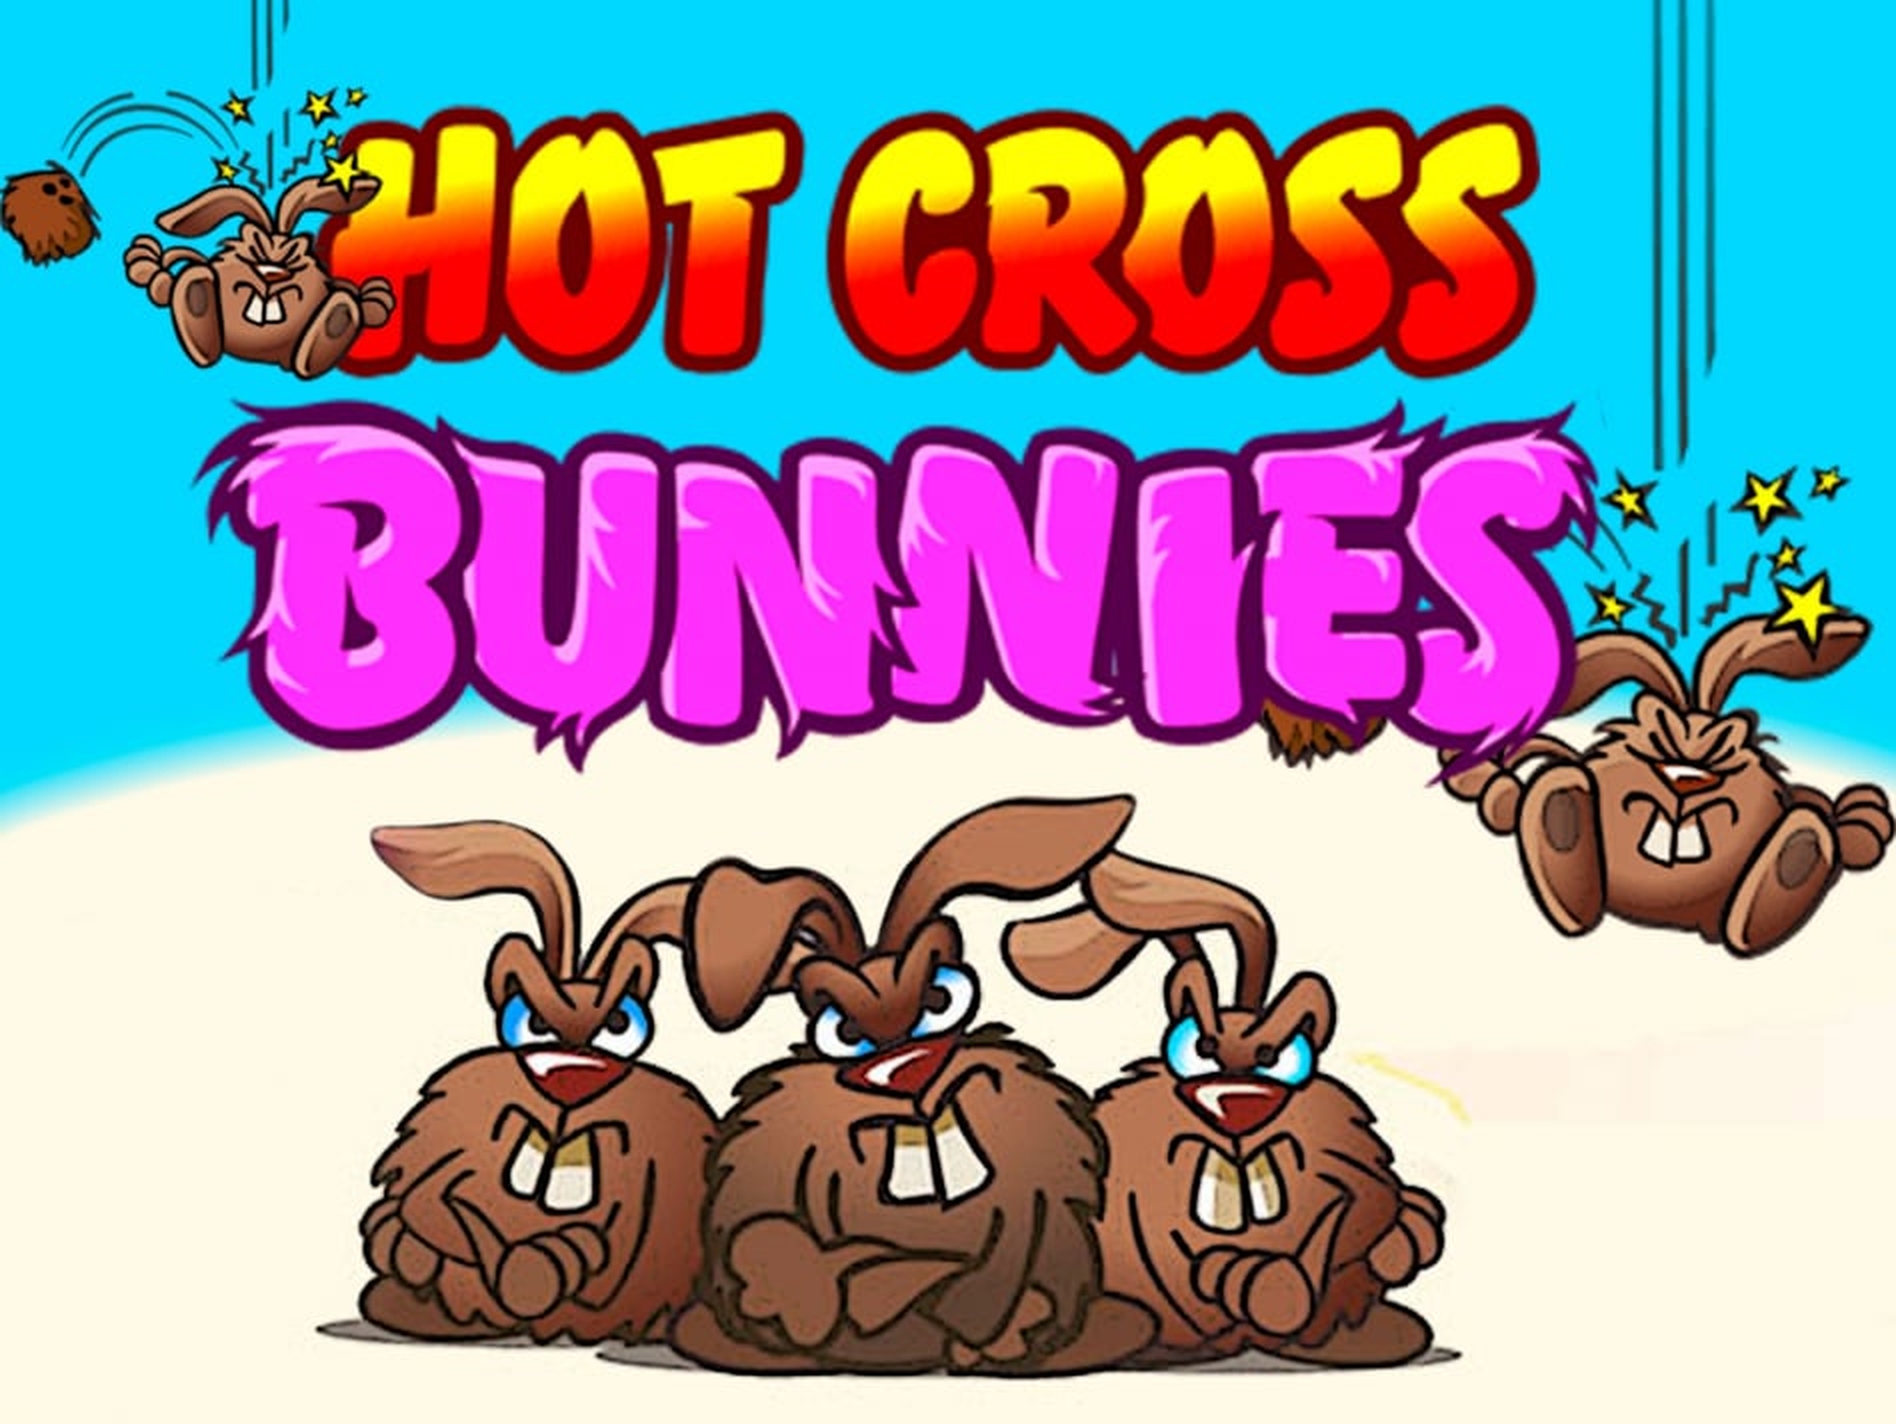 Hot Cross Bunnies demo